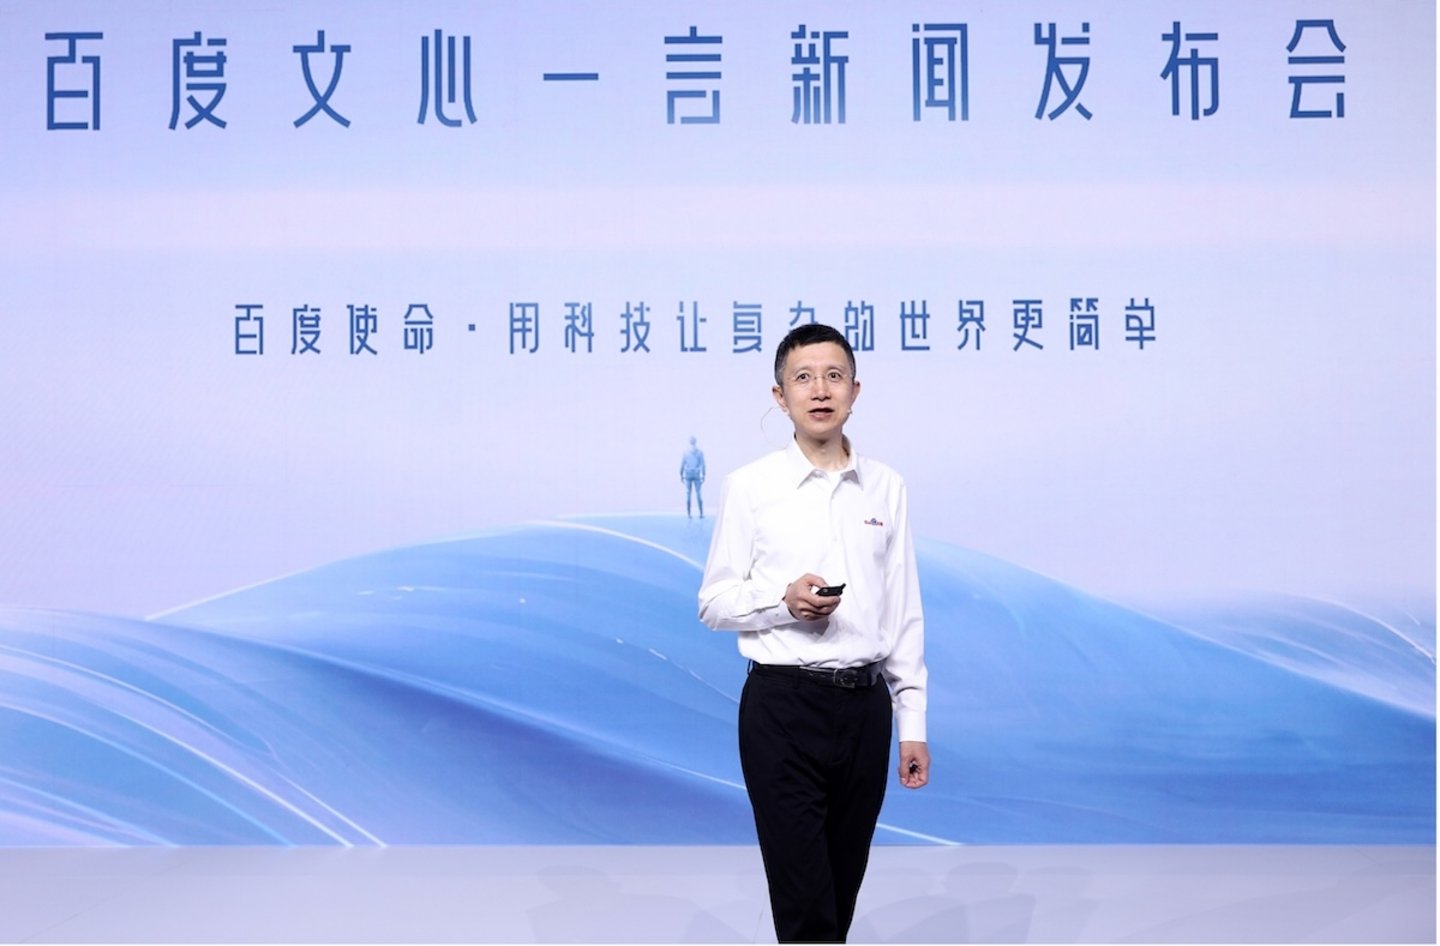 Presentación de Ernie Bot, la IA generativa de Baidu